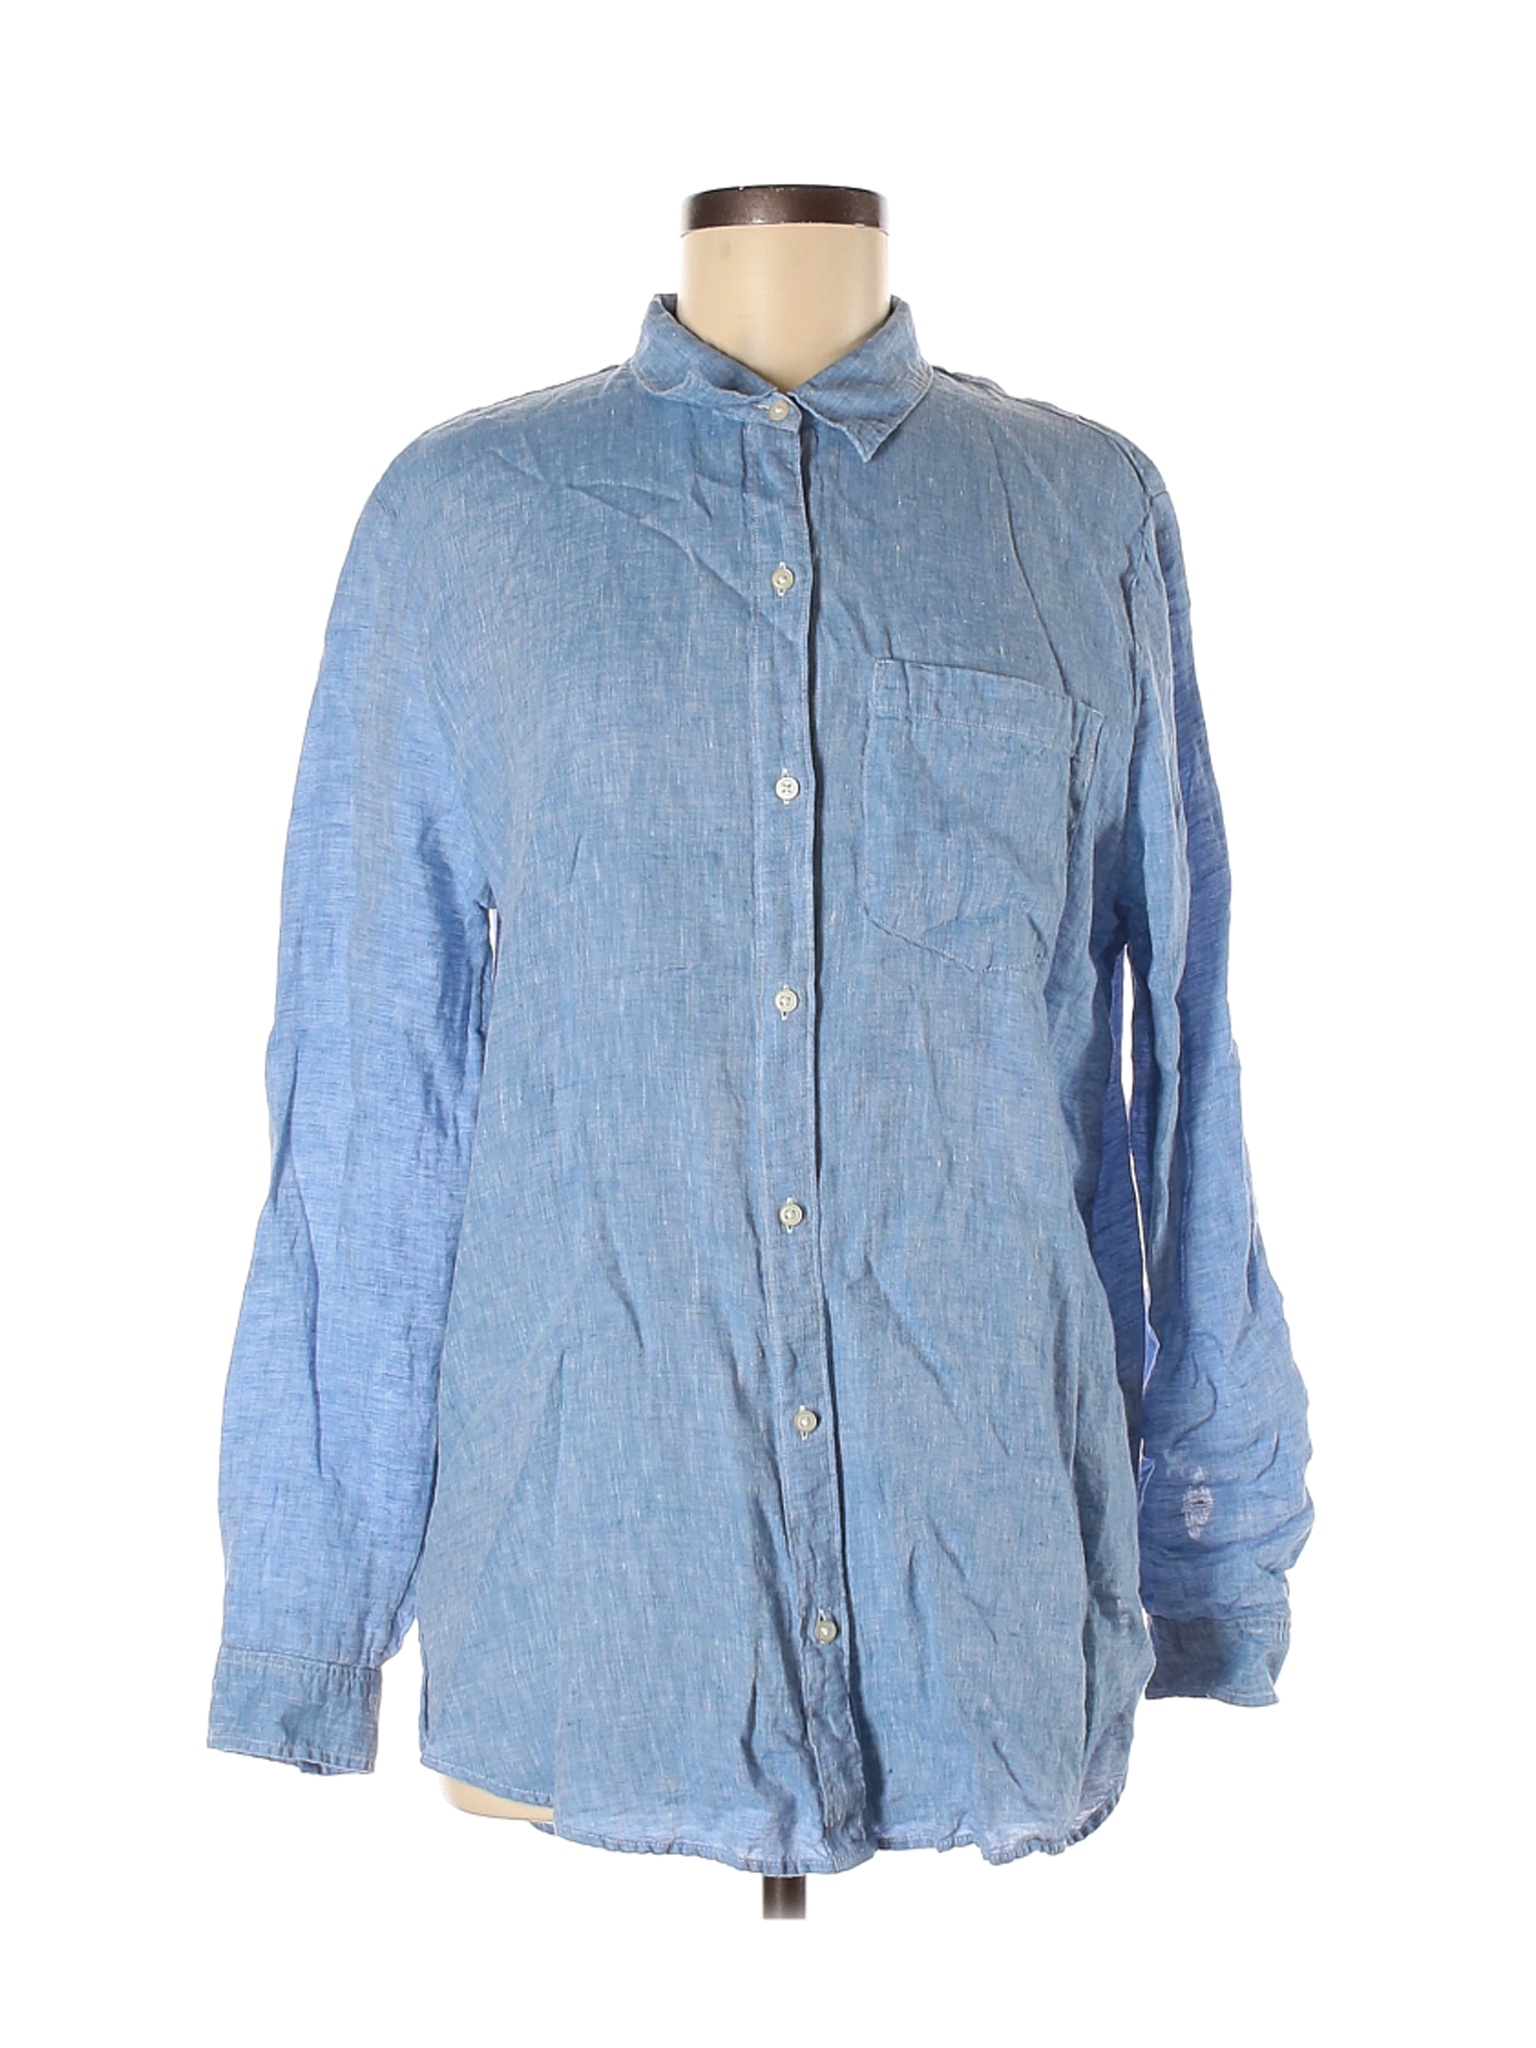 Gap Women Blue Long Sleeve Button-Down Shirt M | eBay